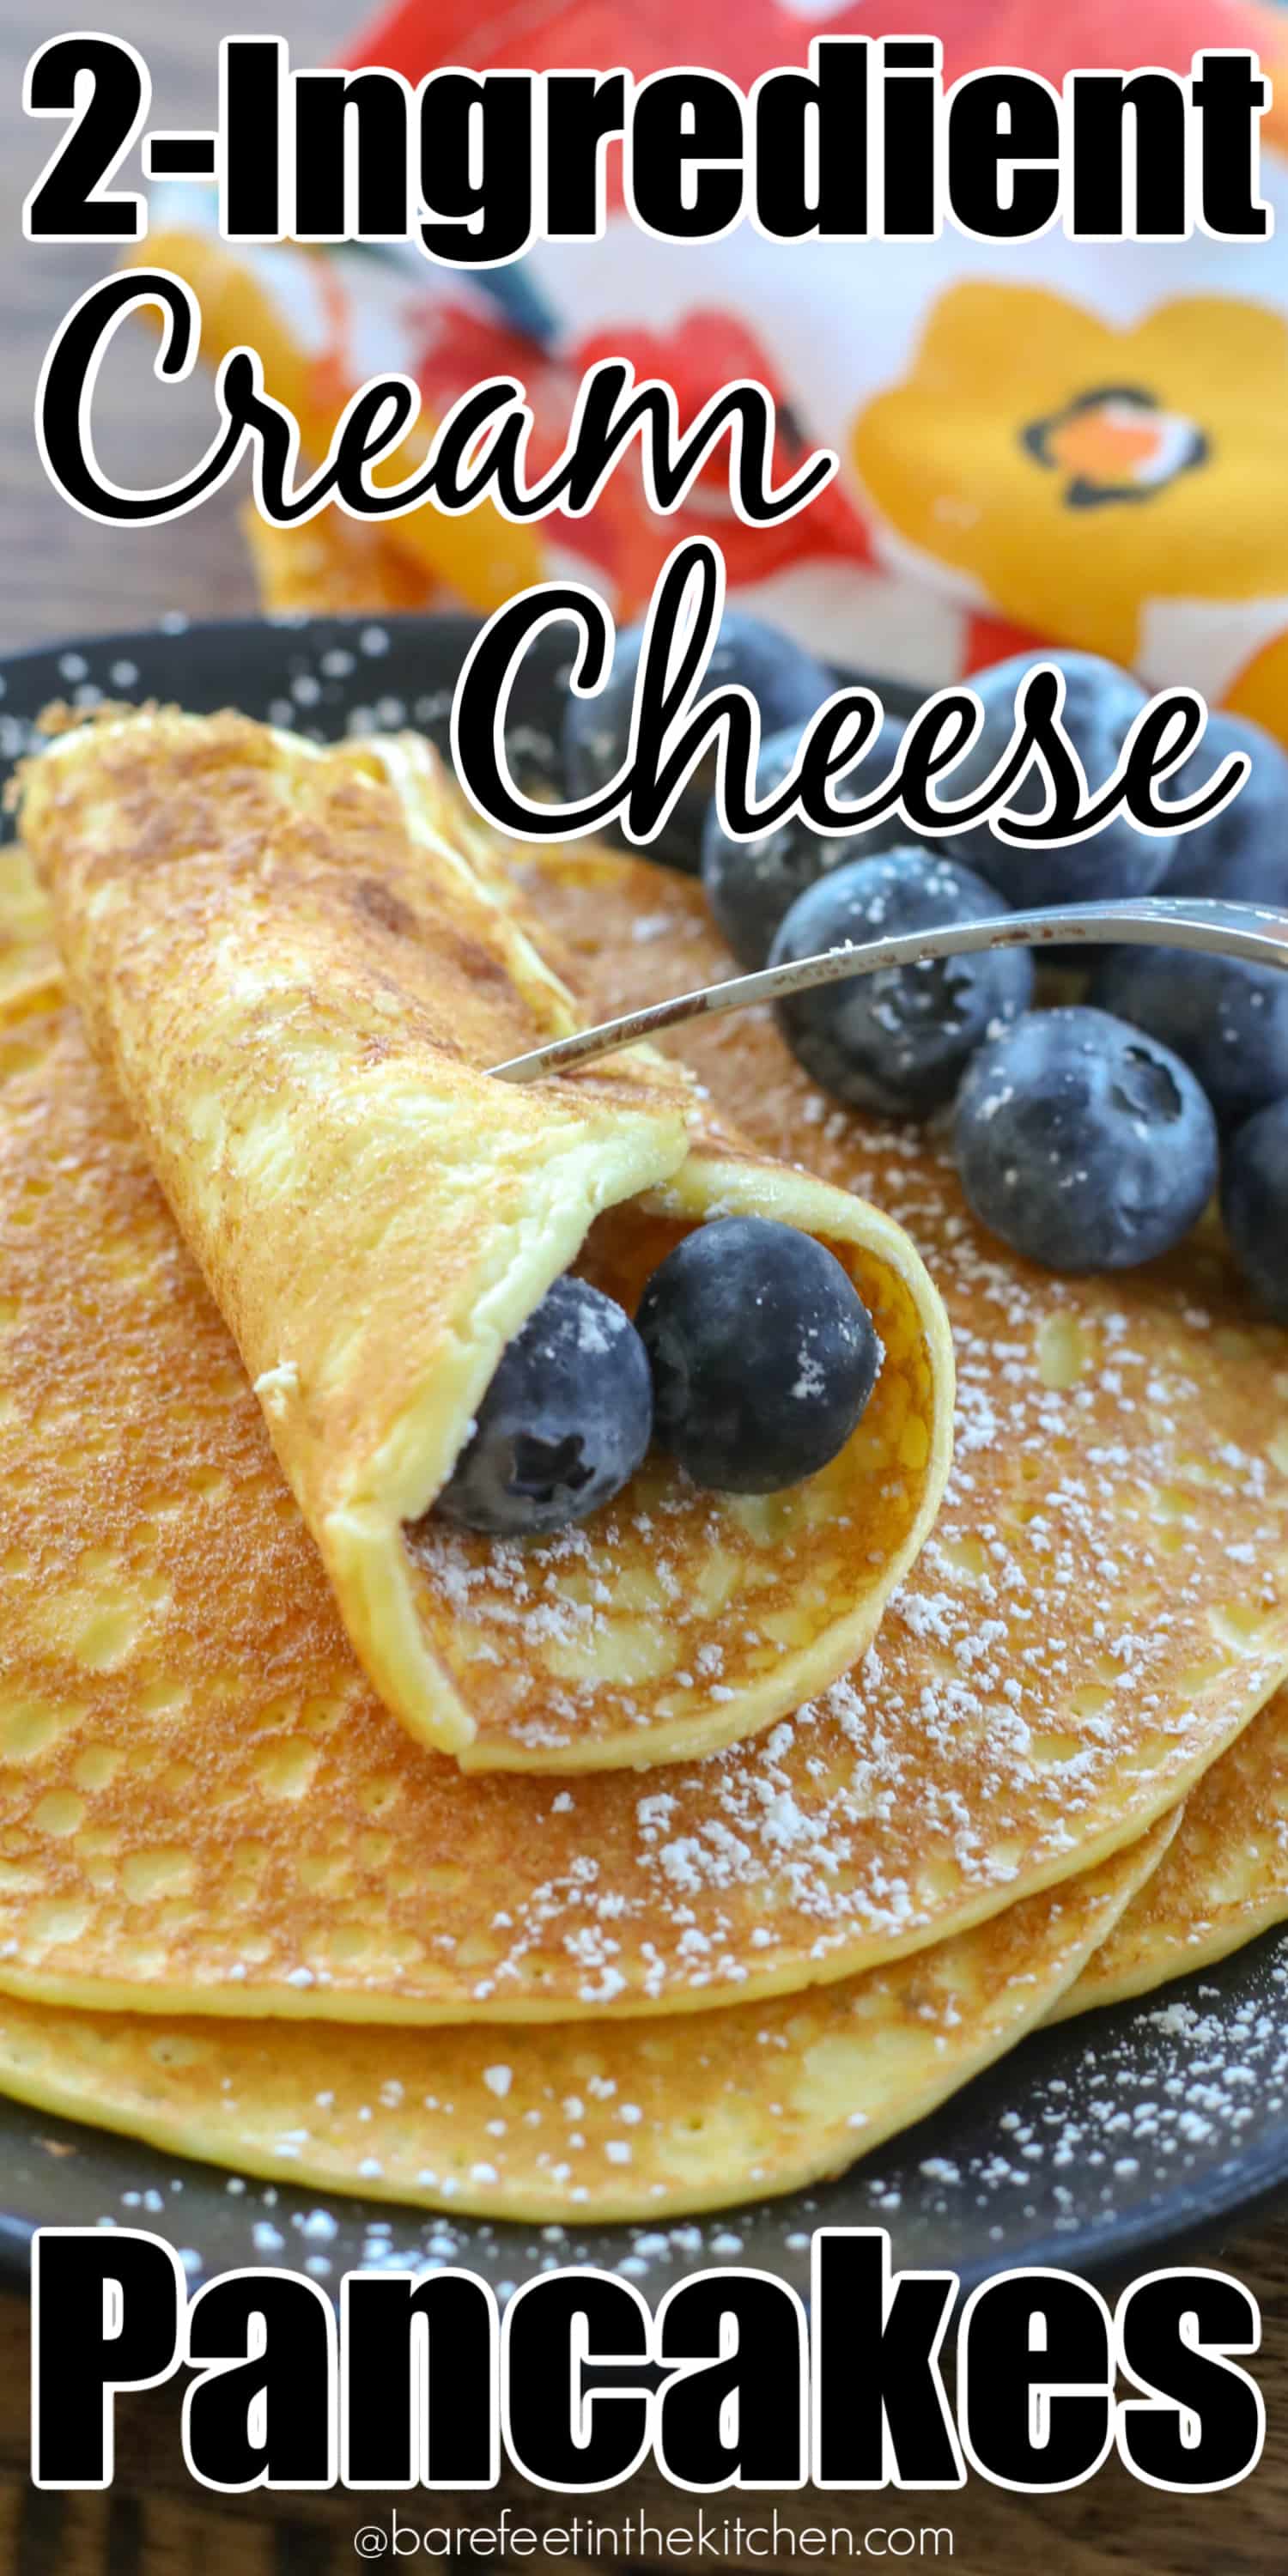 https://barefeetinthekitchen.com/wp-content/uploads/2017/02/Cream-Cheese-Pancakes-1.jpg